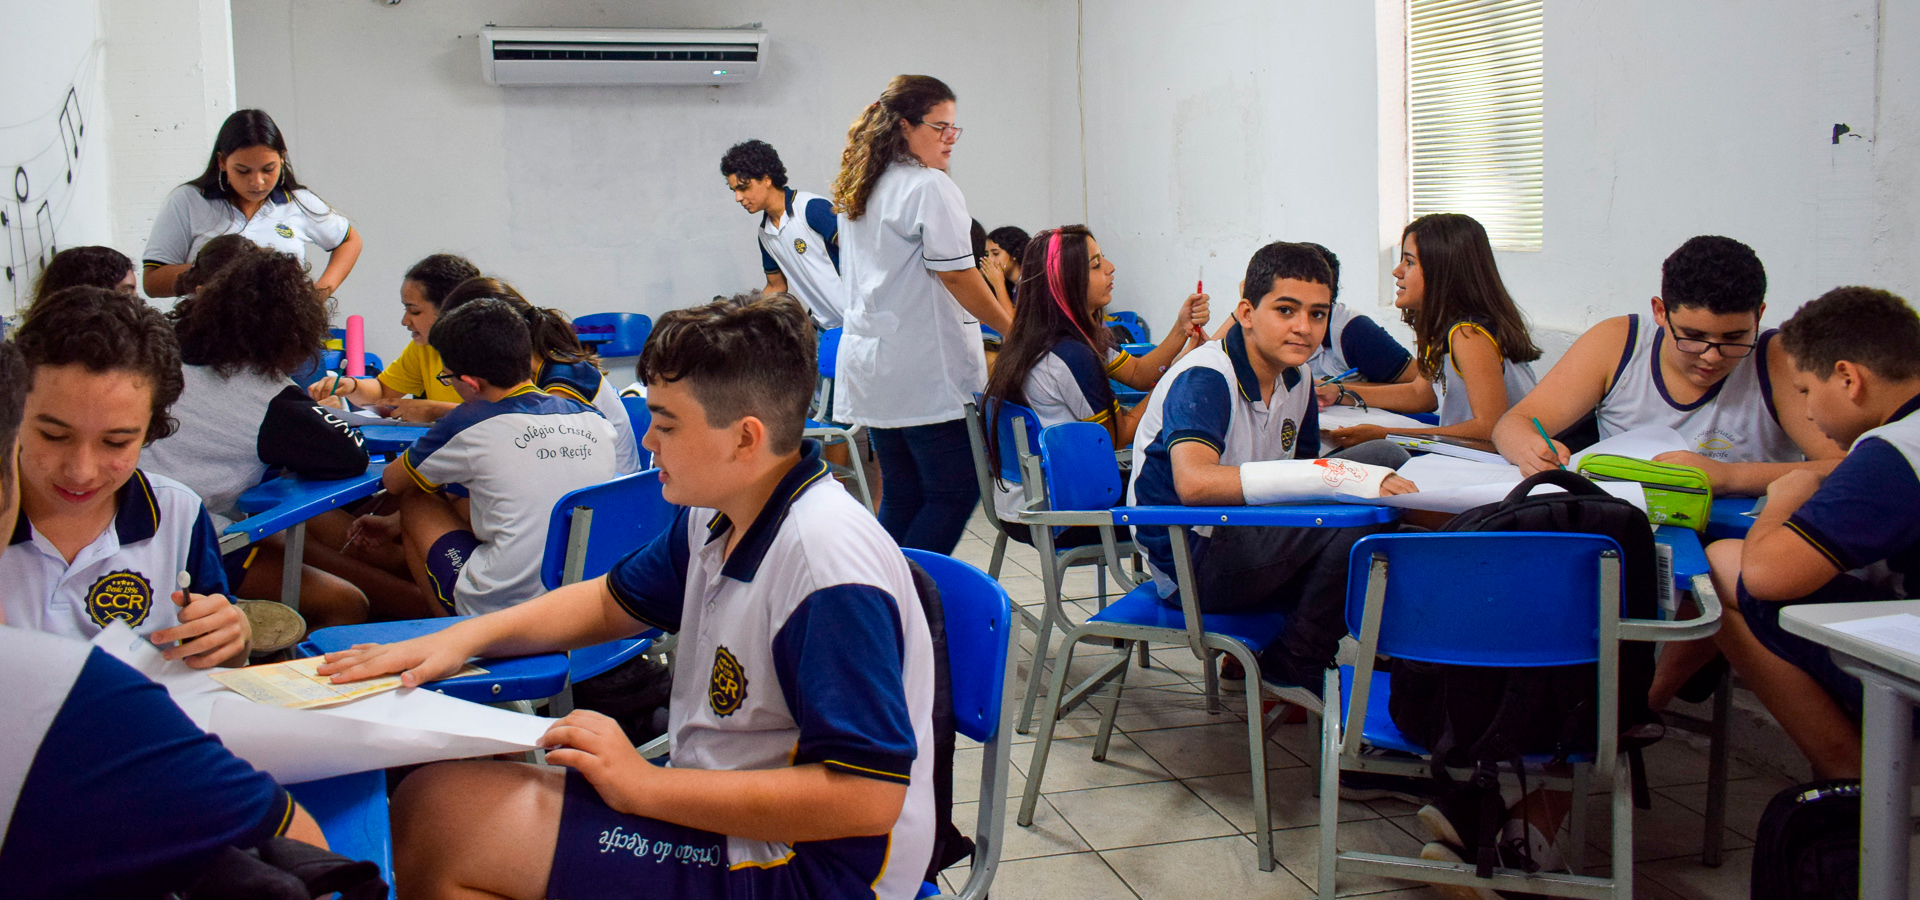 Matrícula escolar 2021: Recife está com inscrições para 4,6 mil vagas remanescentes. Veja!